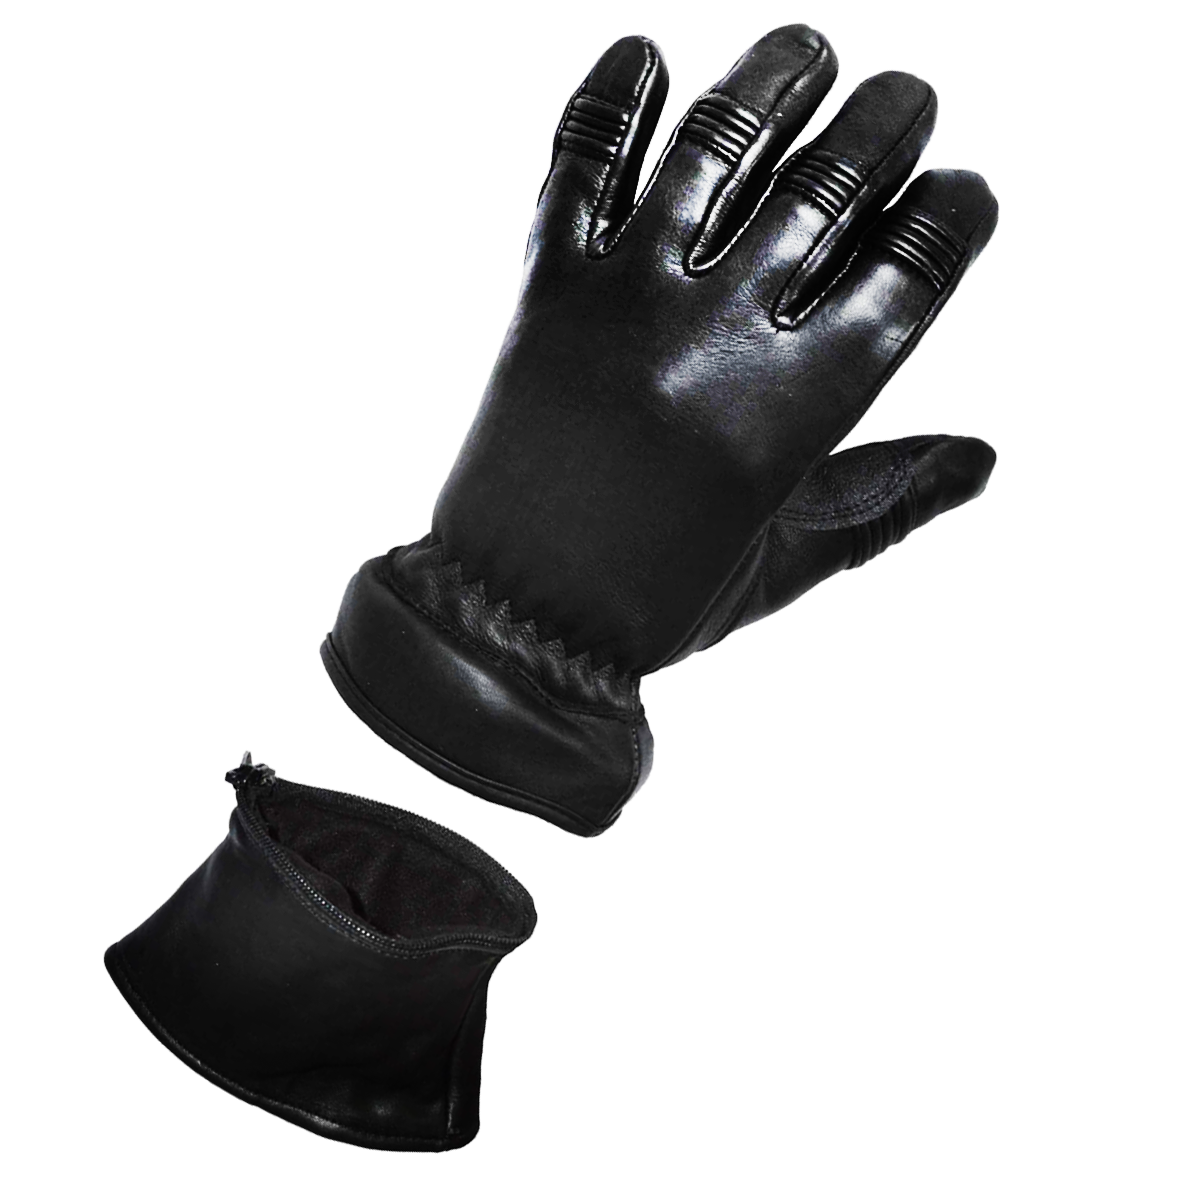 Vance Convertible Zip Off Gauntlet Deerskin Leather Gloves